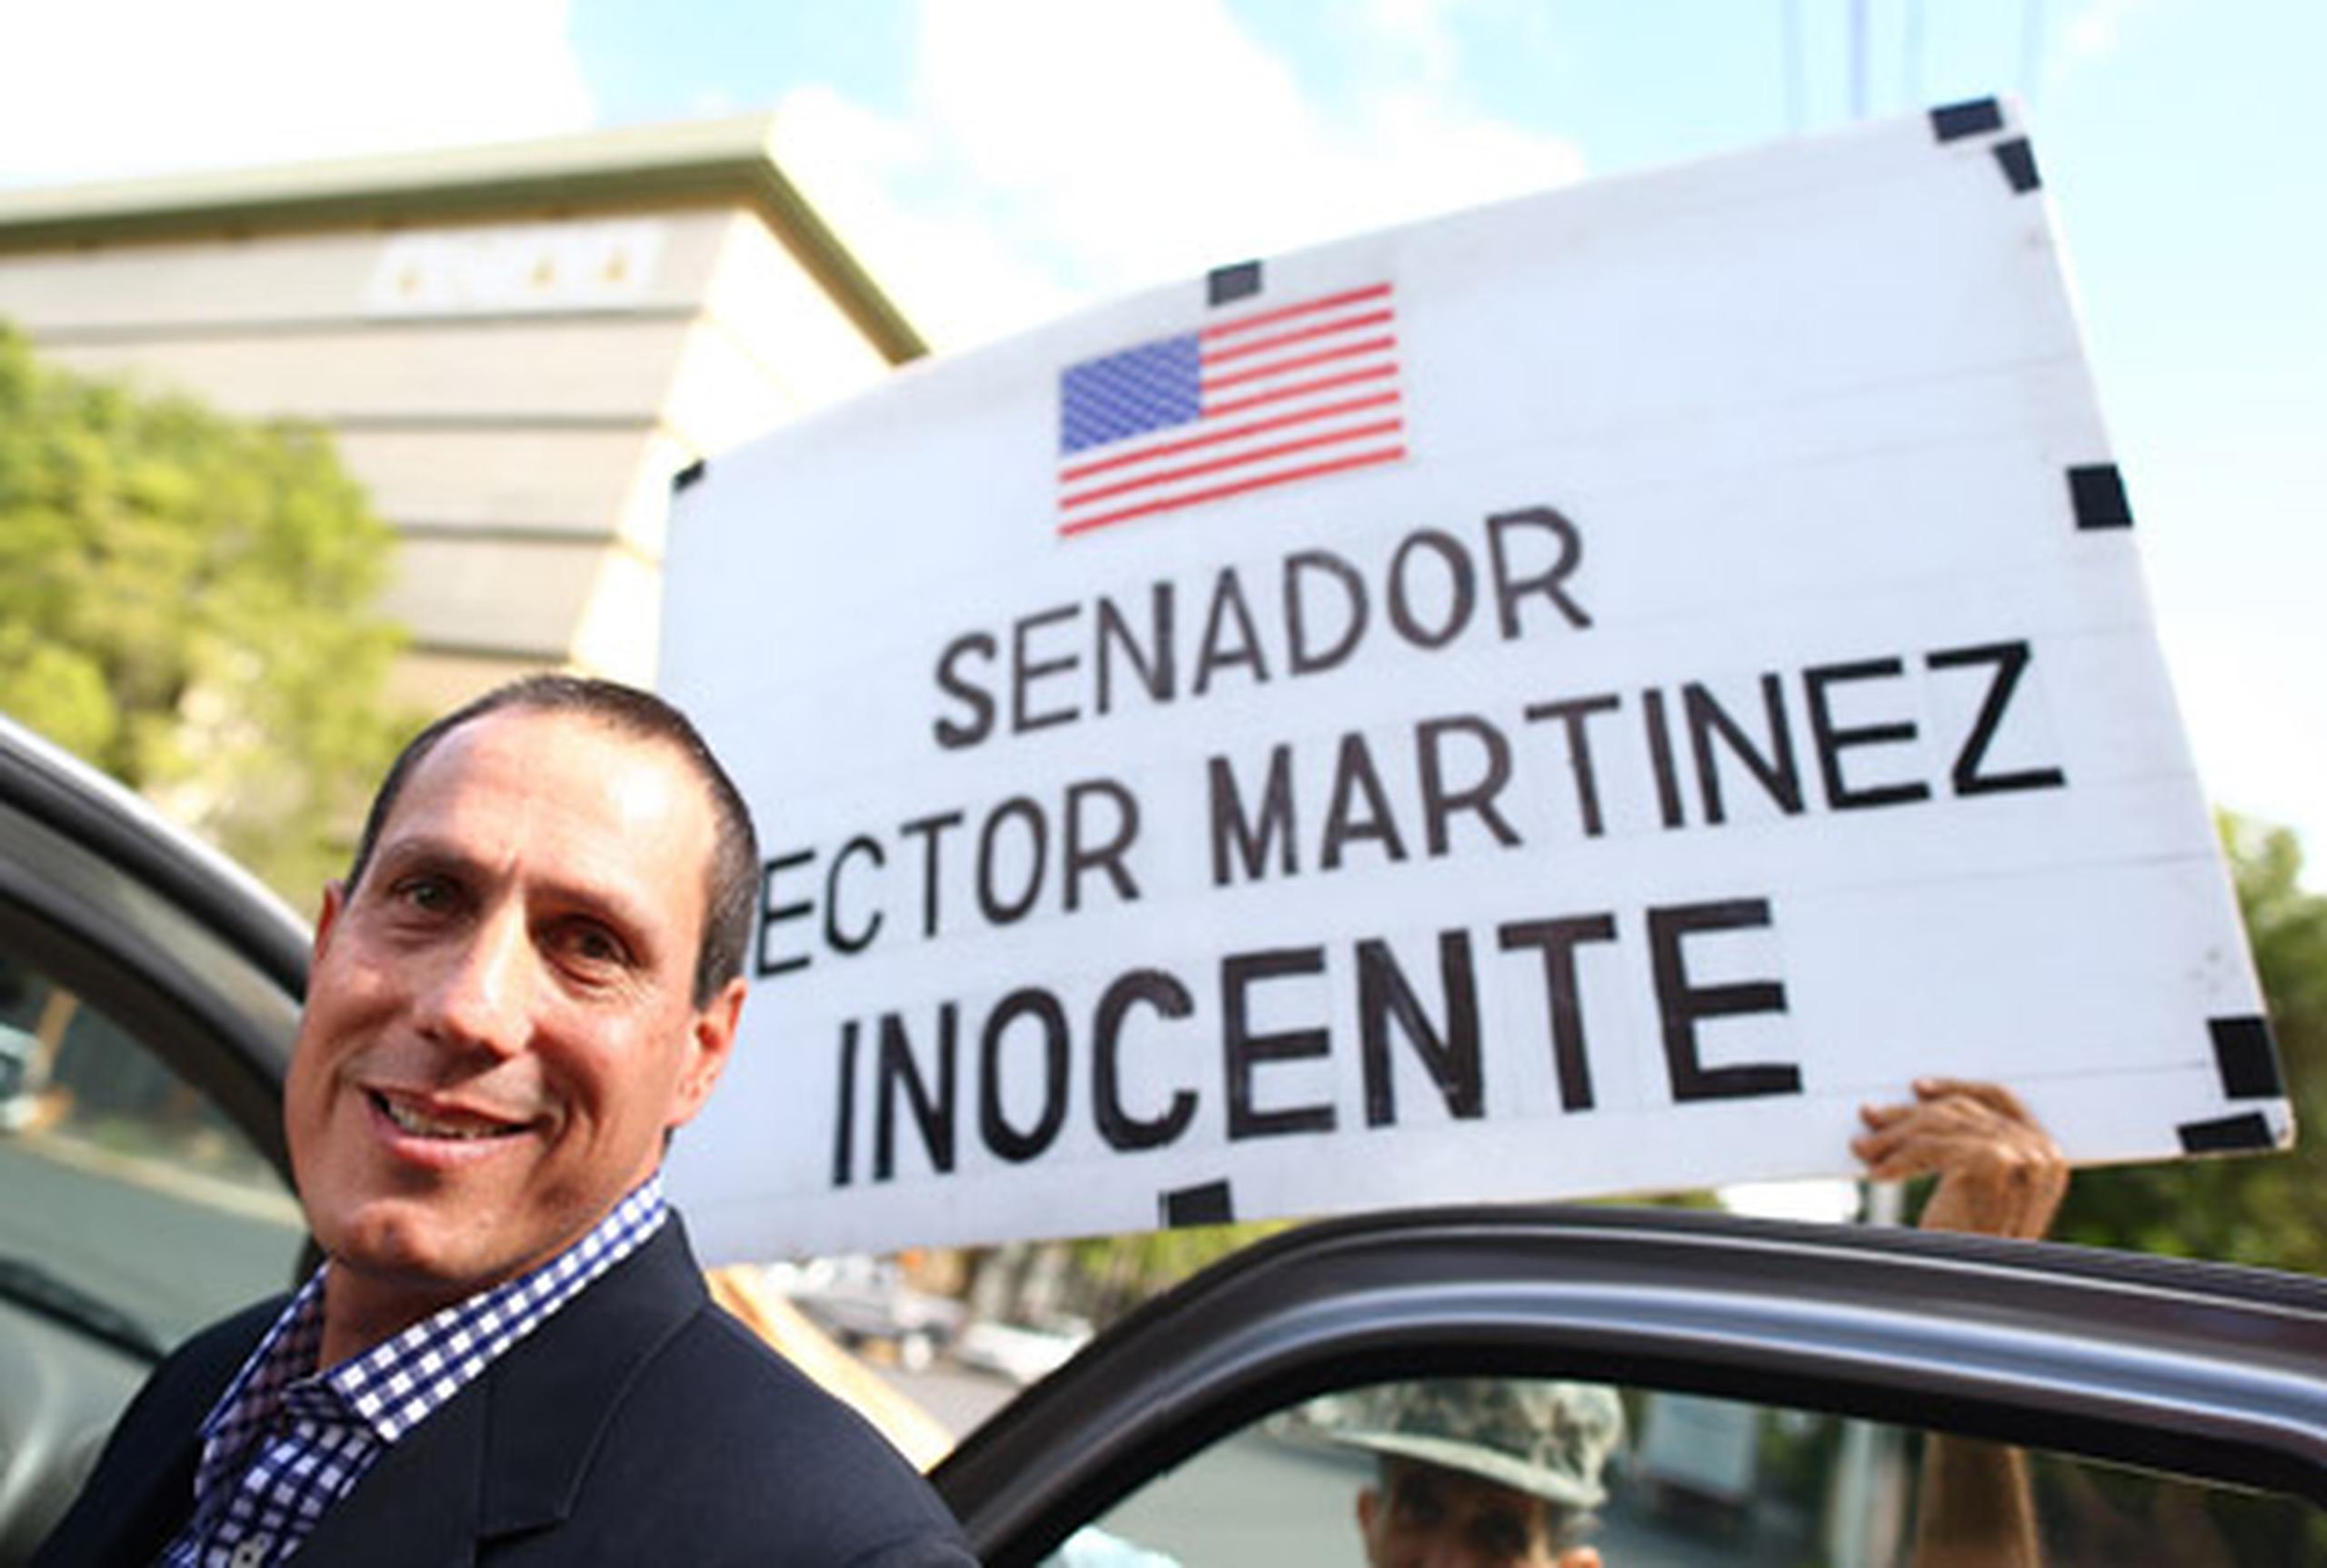 El ex senador Héctor Martínez permanecerá excarcelado hasta tanto se resuelva su apelación. (jose.madera@gfrmedia.com)
